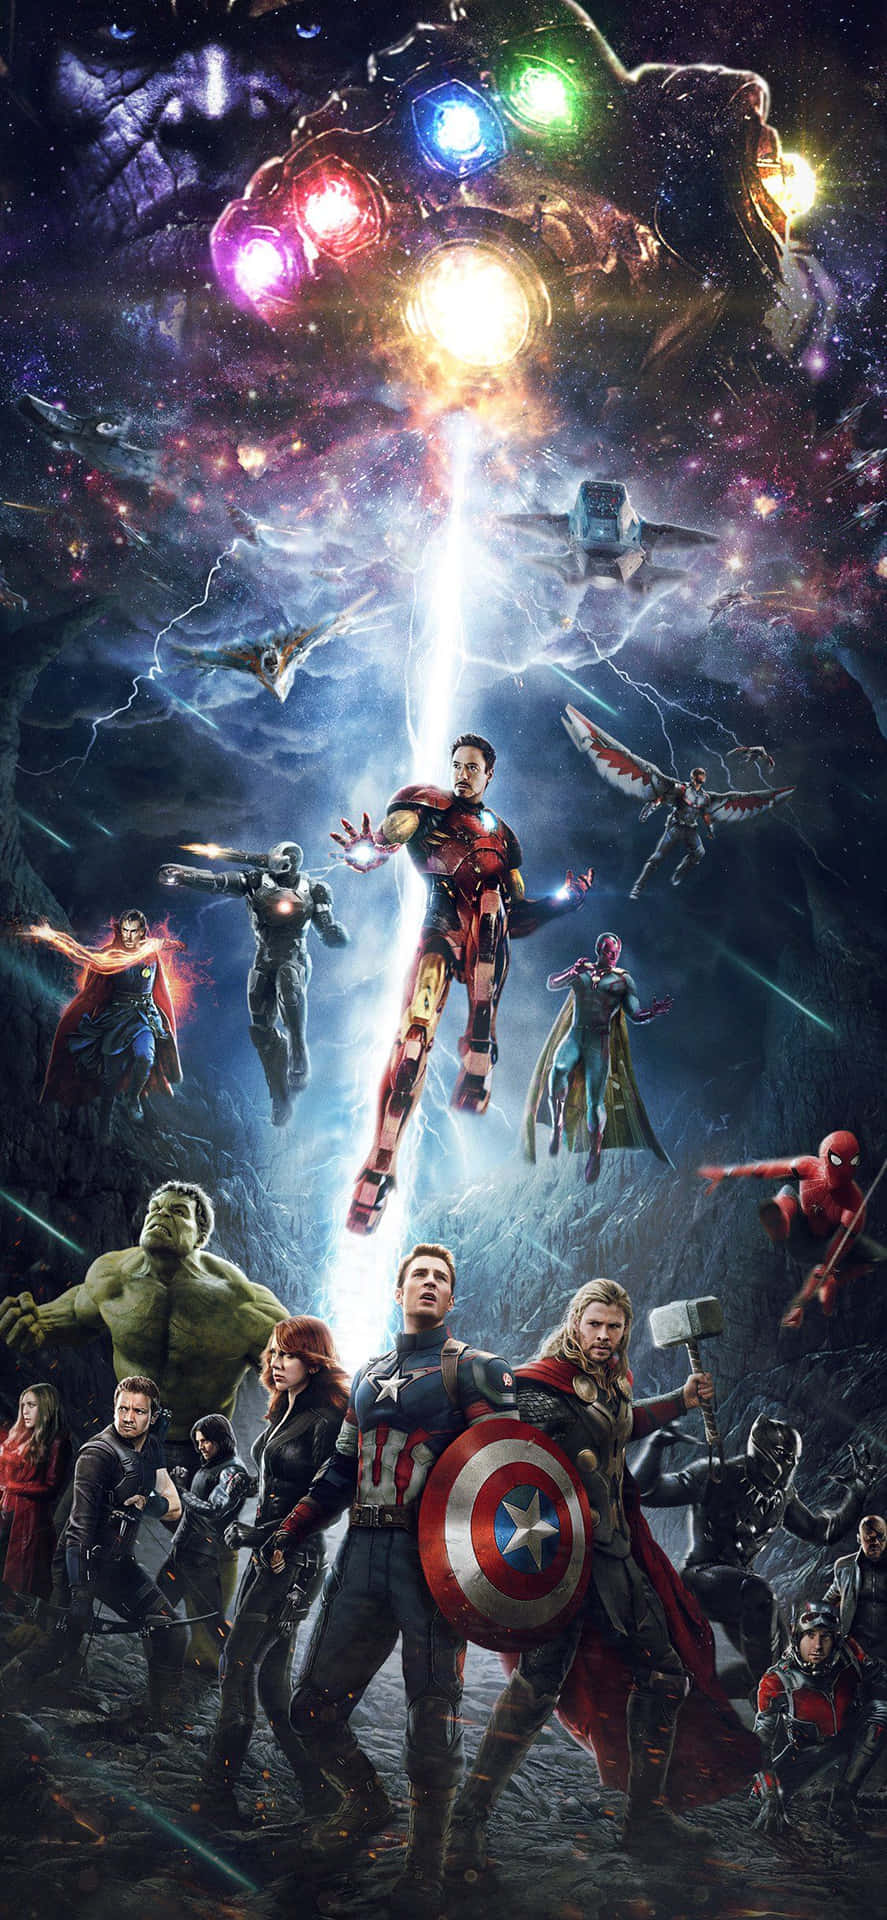 Klar til handling med iPhone Xs og Marvels Avengers!